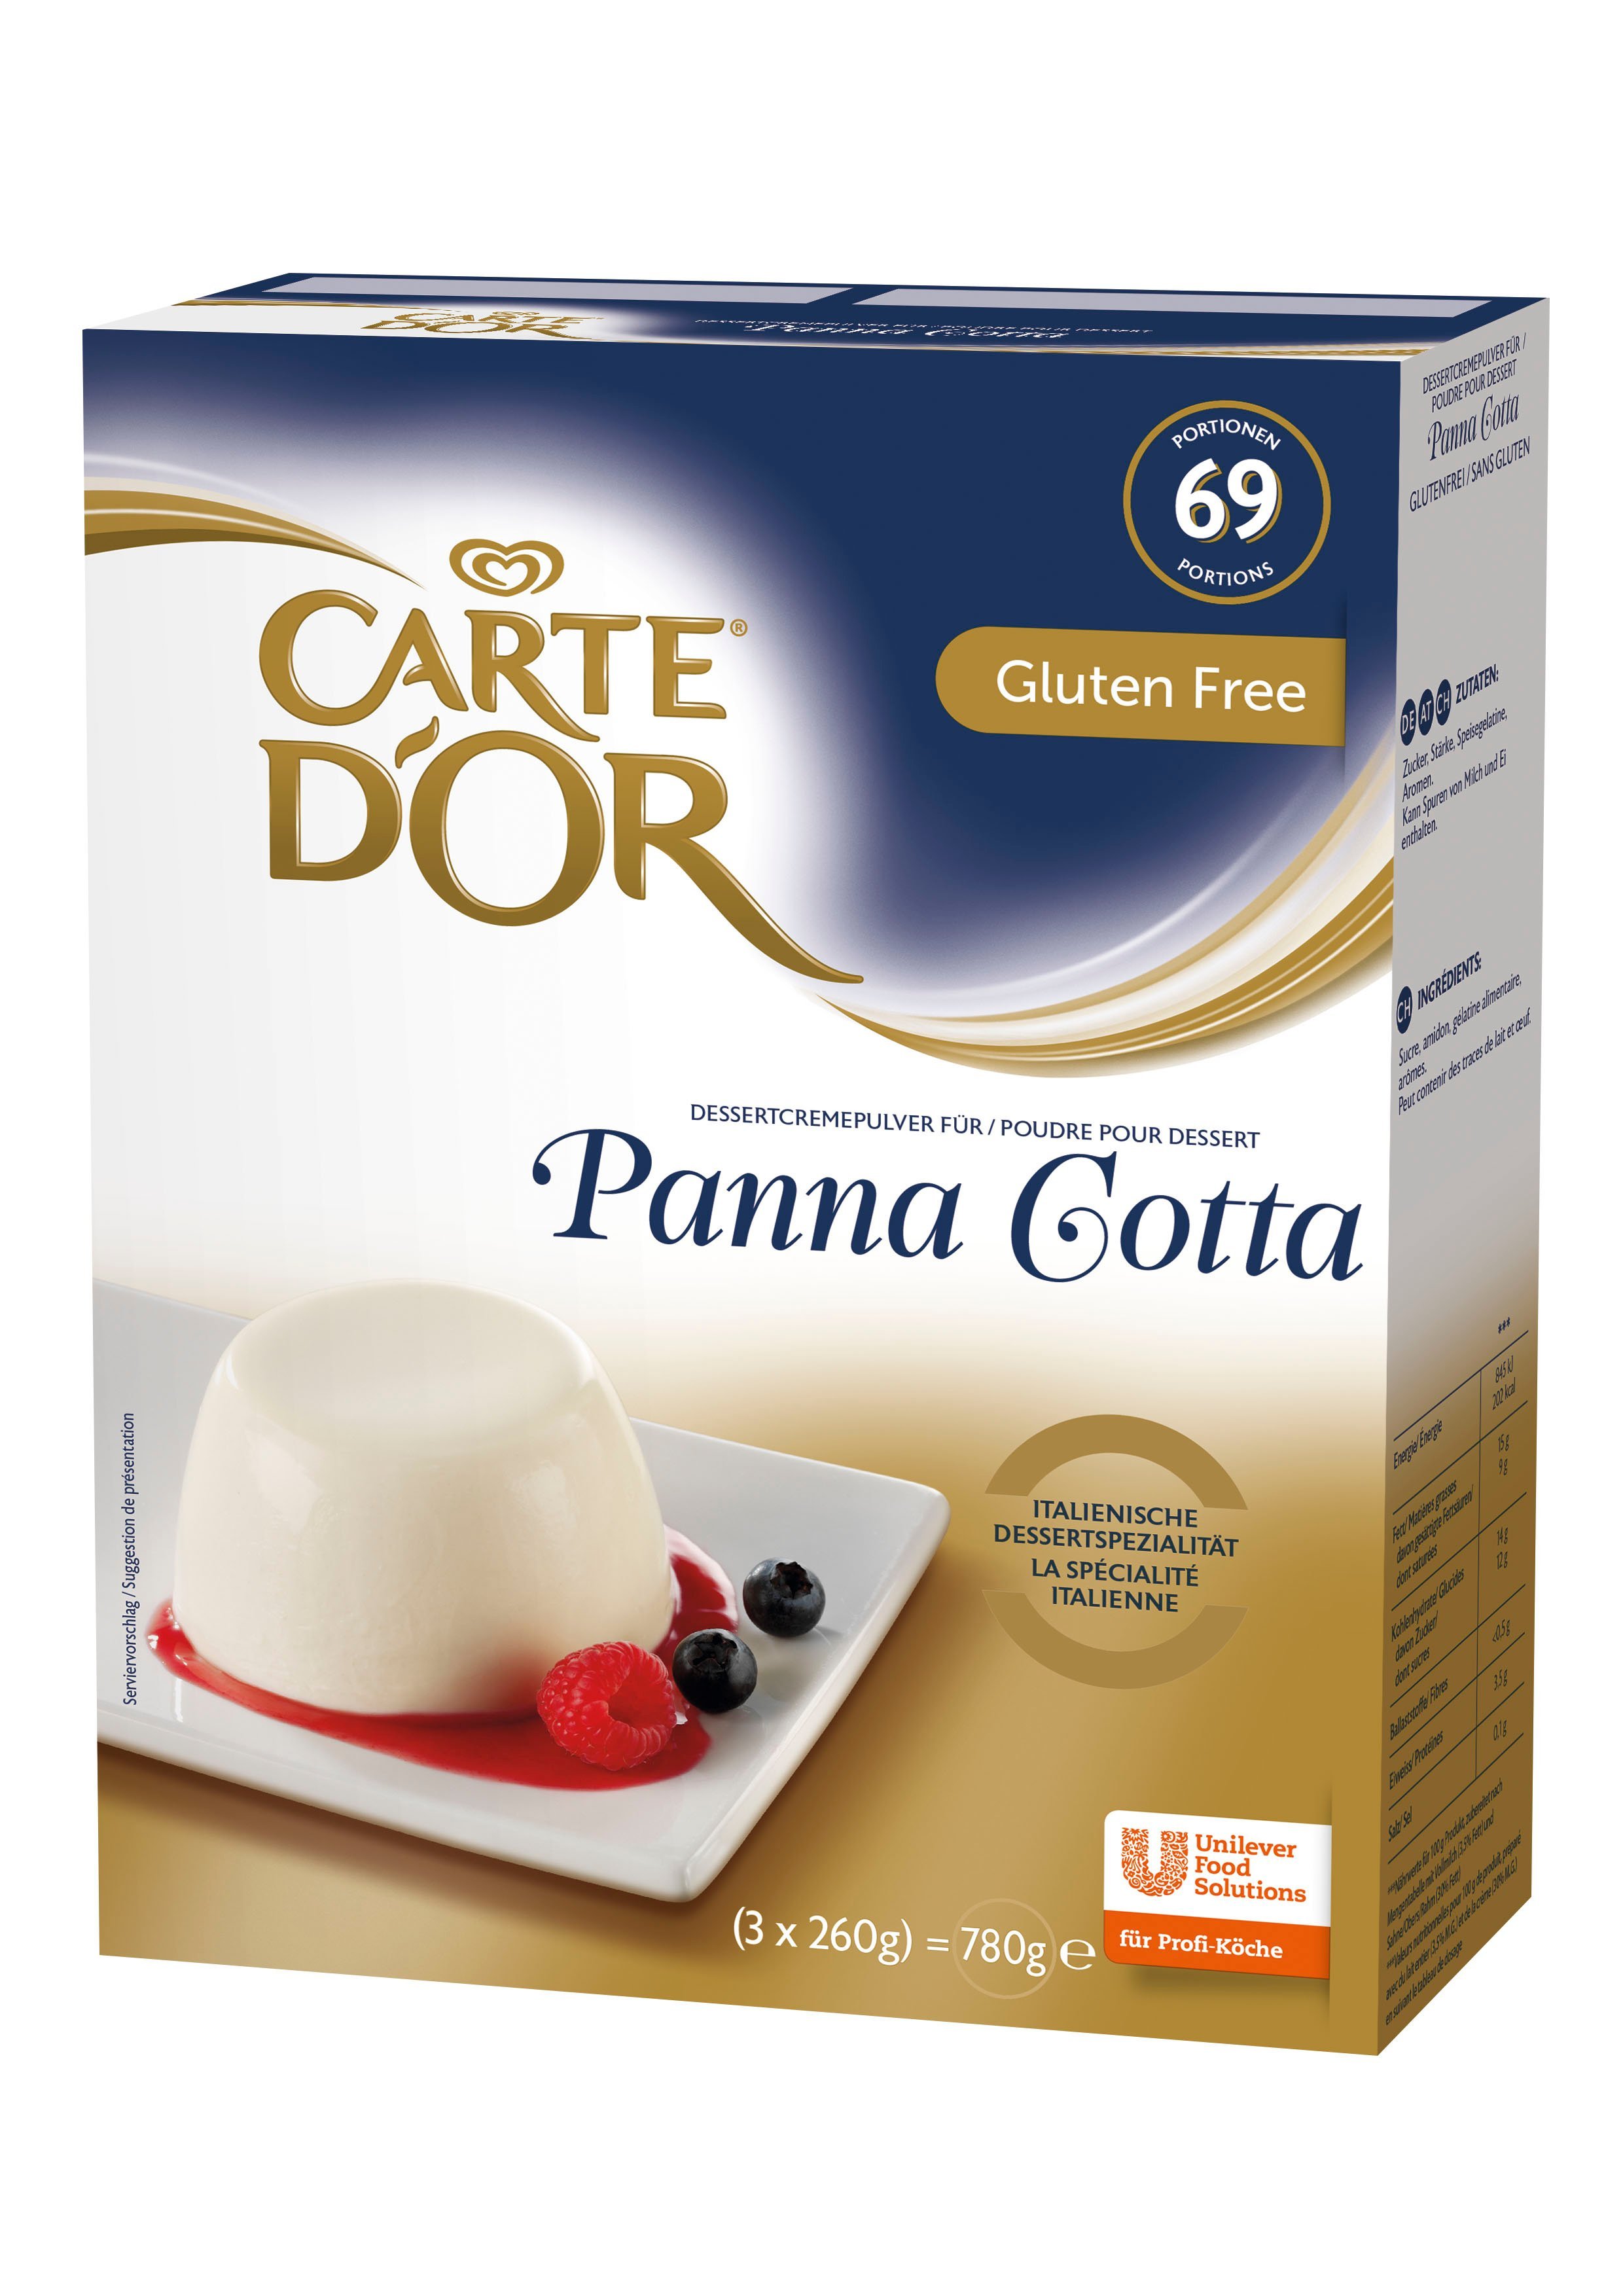 CARTE d'OR Pannacotta 0,78 kg - 